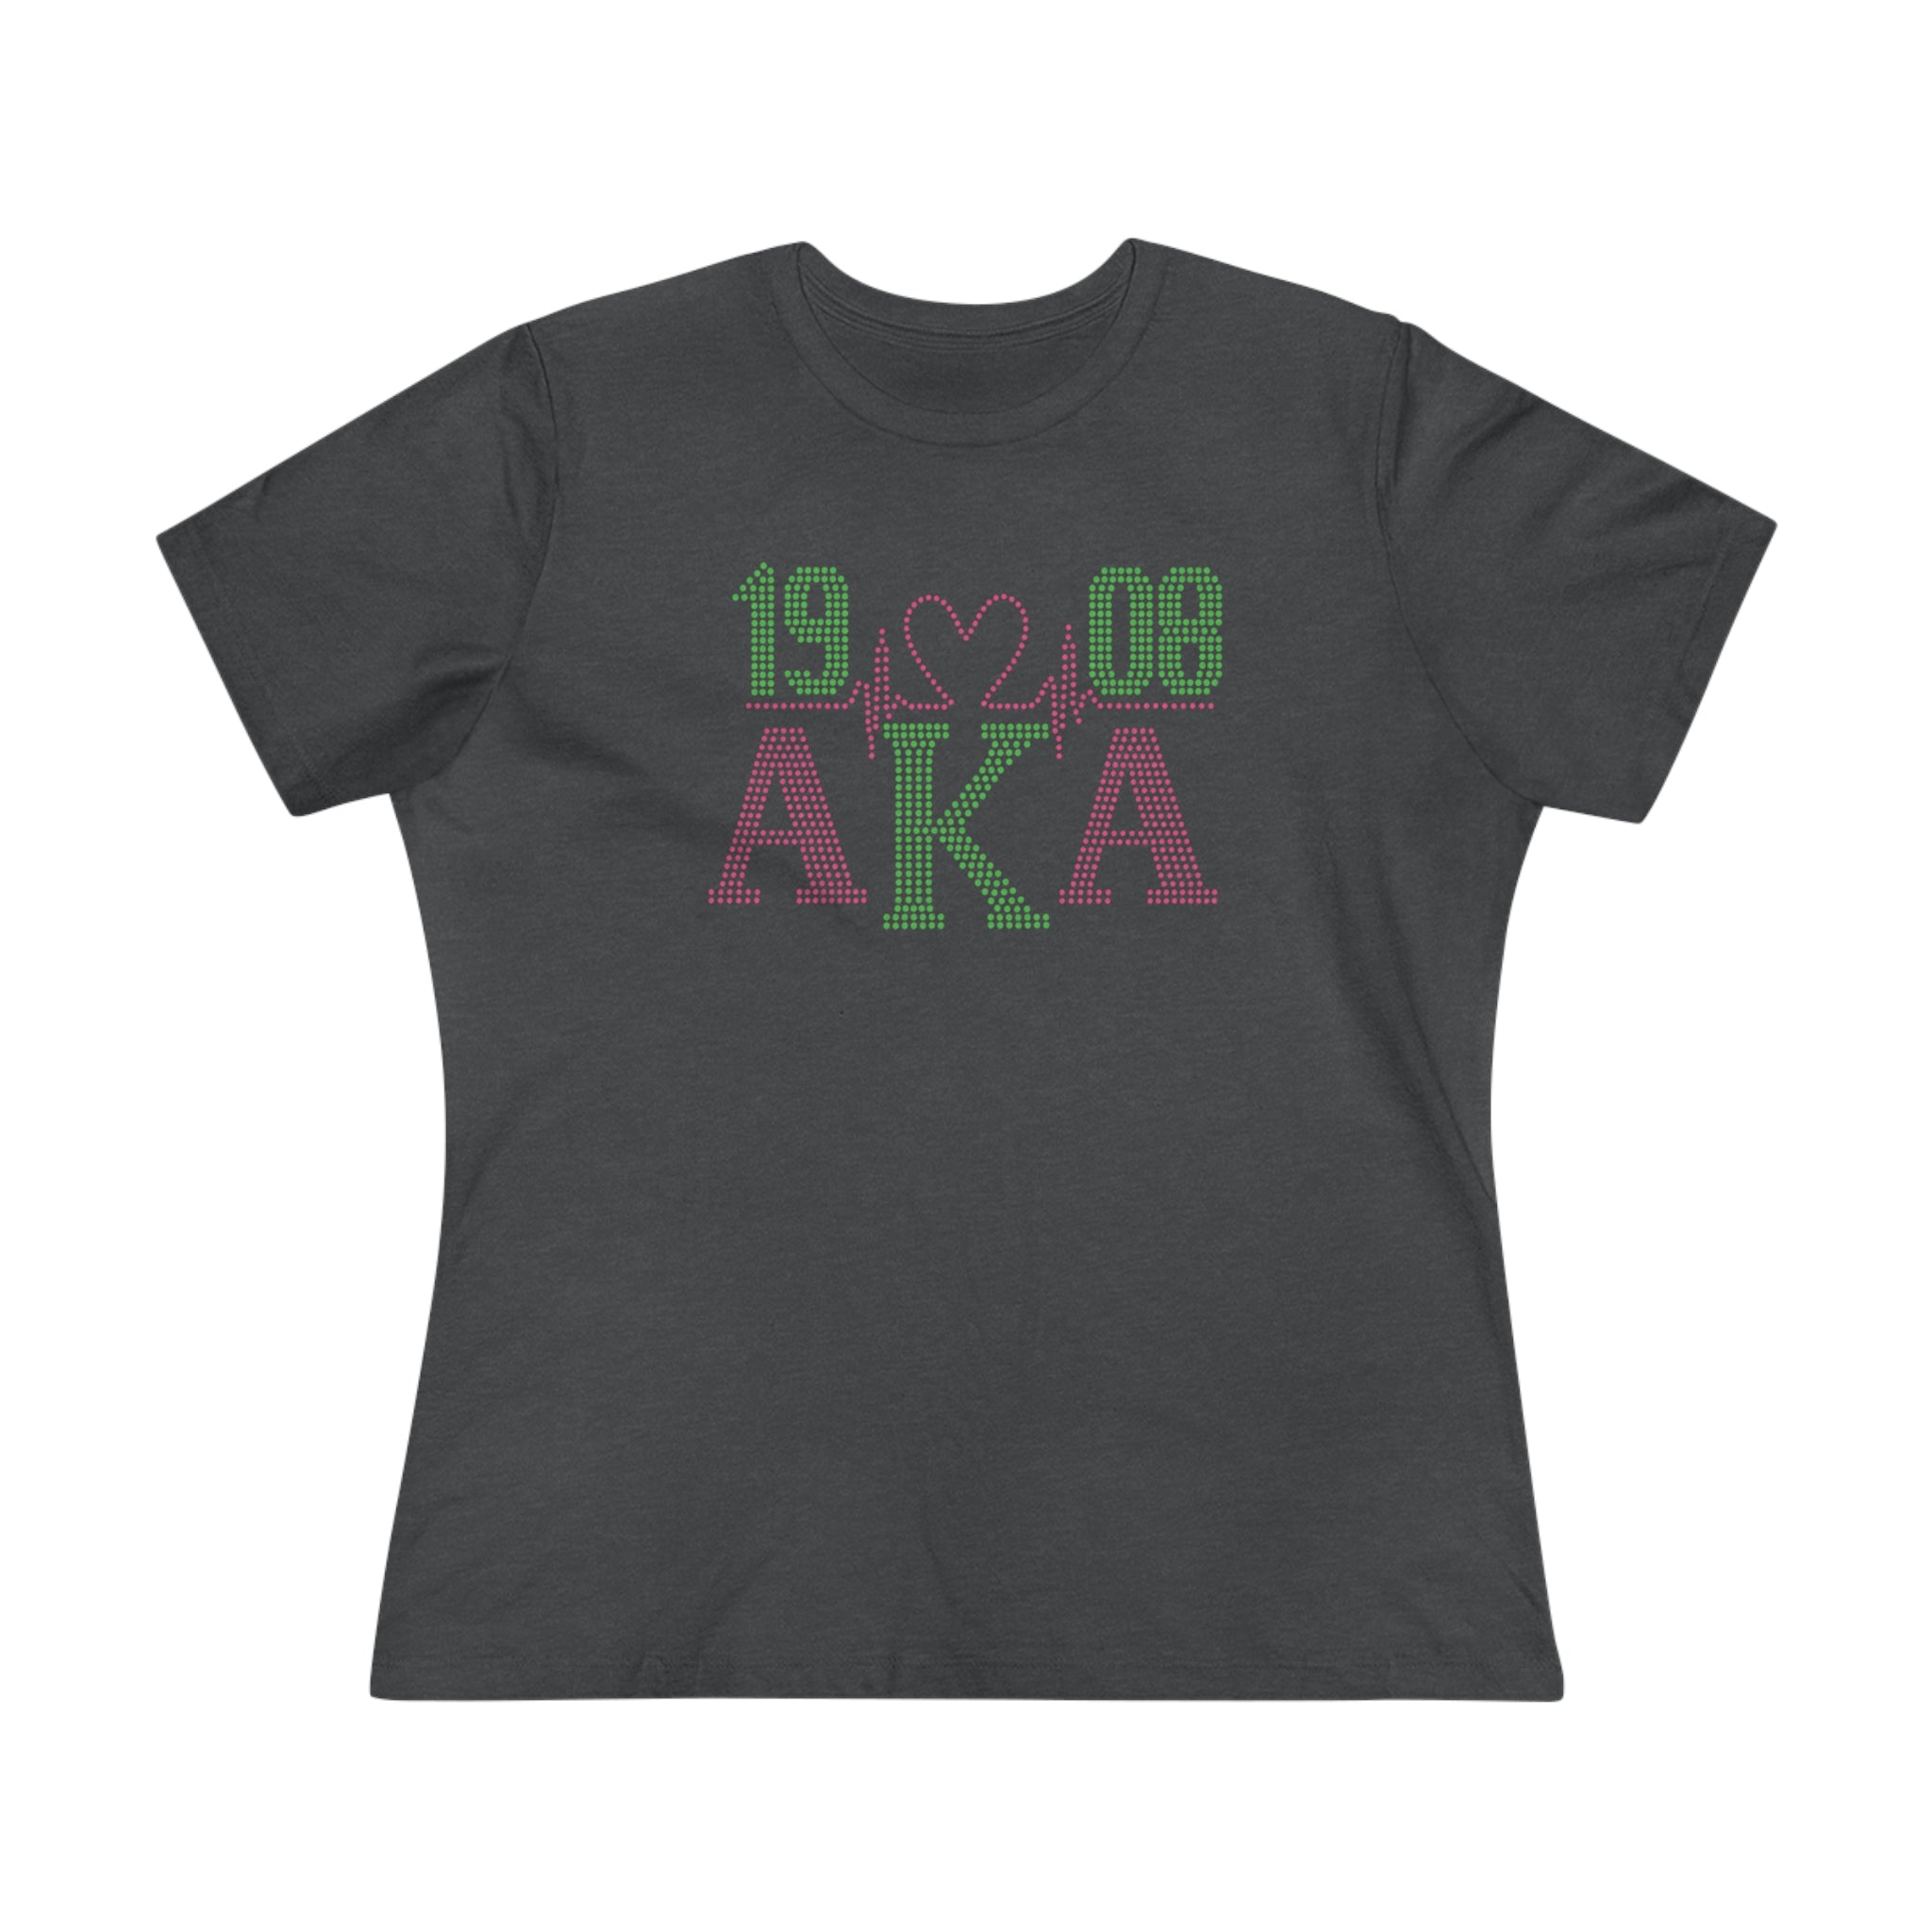 AKA Women's Premium Shirt